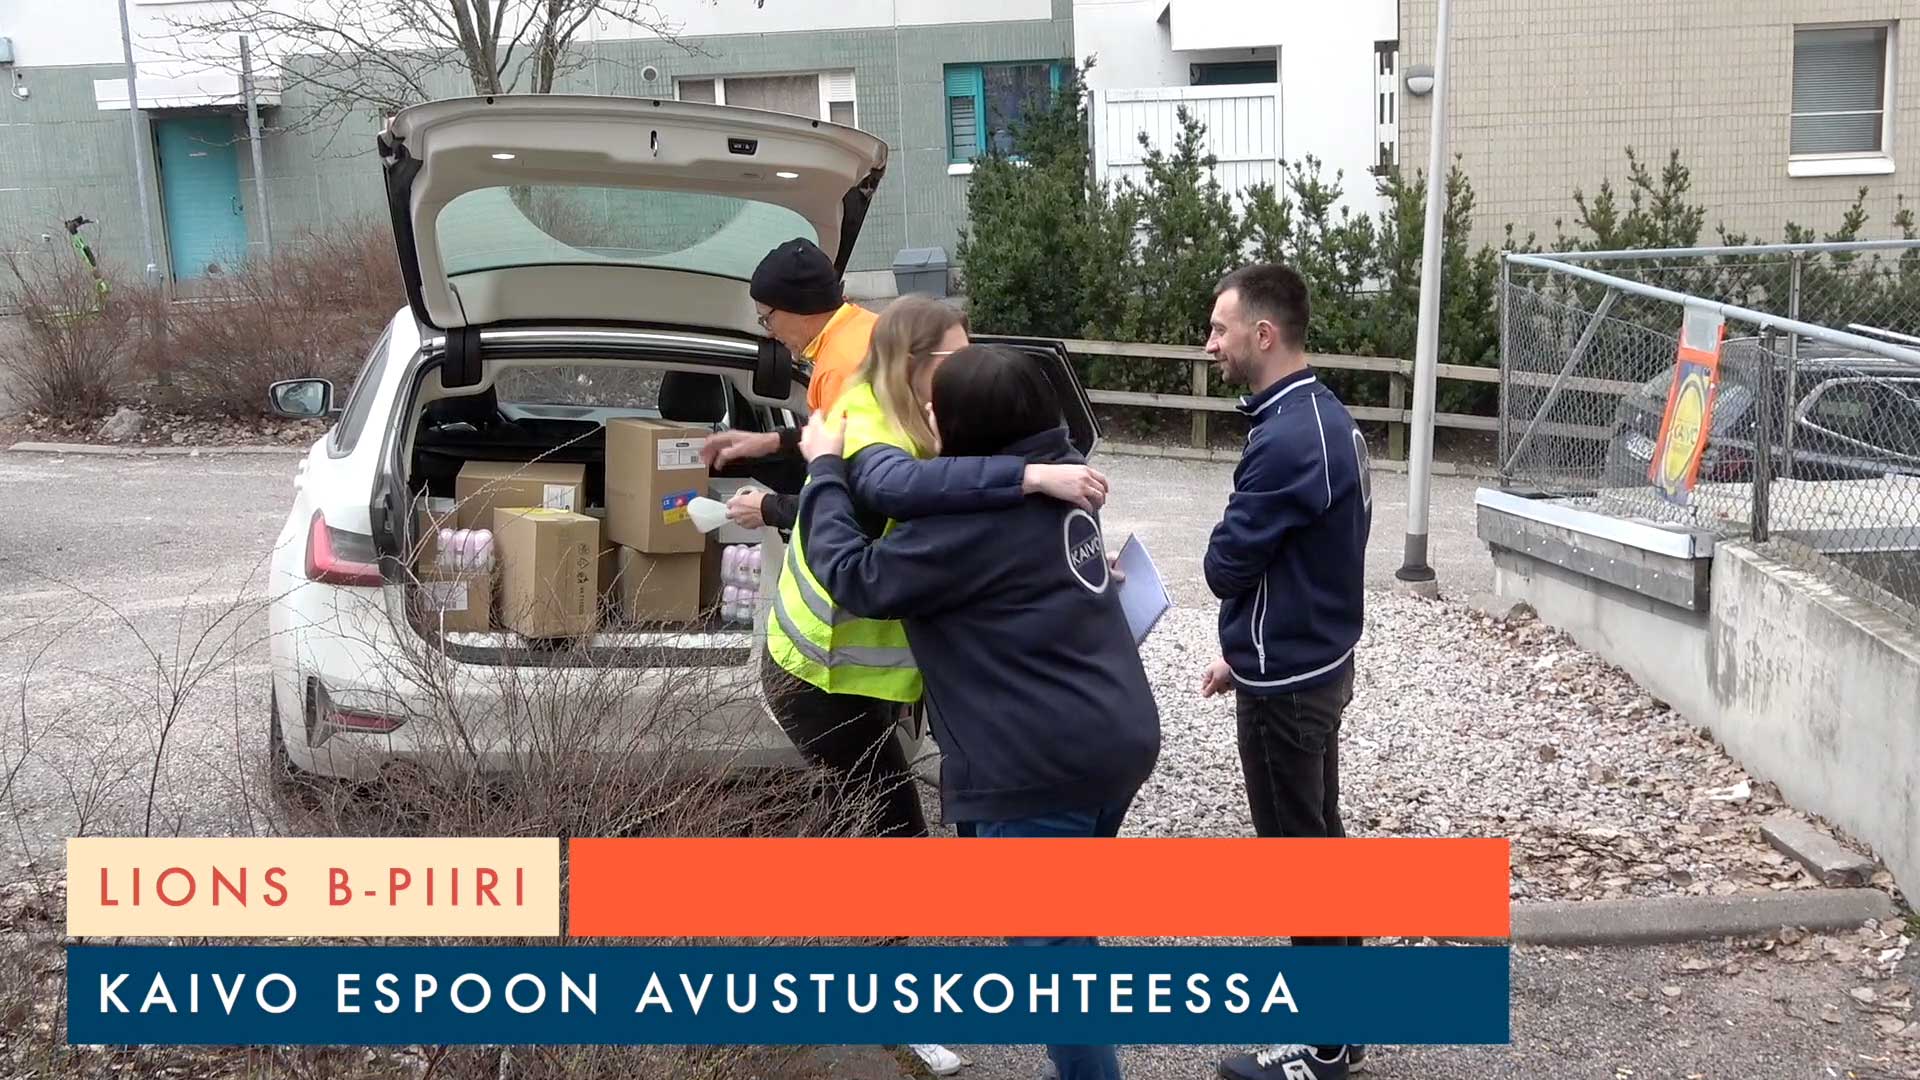 Avustus tuo toivoa – Lions klubit ja Kaivo Espoo ry toimittavat ruoka-apua ja hygieniatuotteita Ukrainan pakolaisille Suomessa